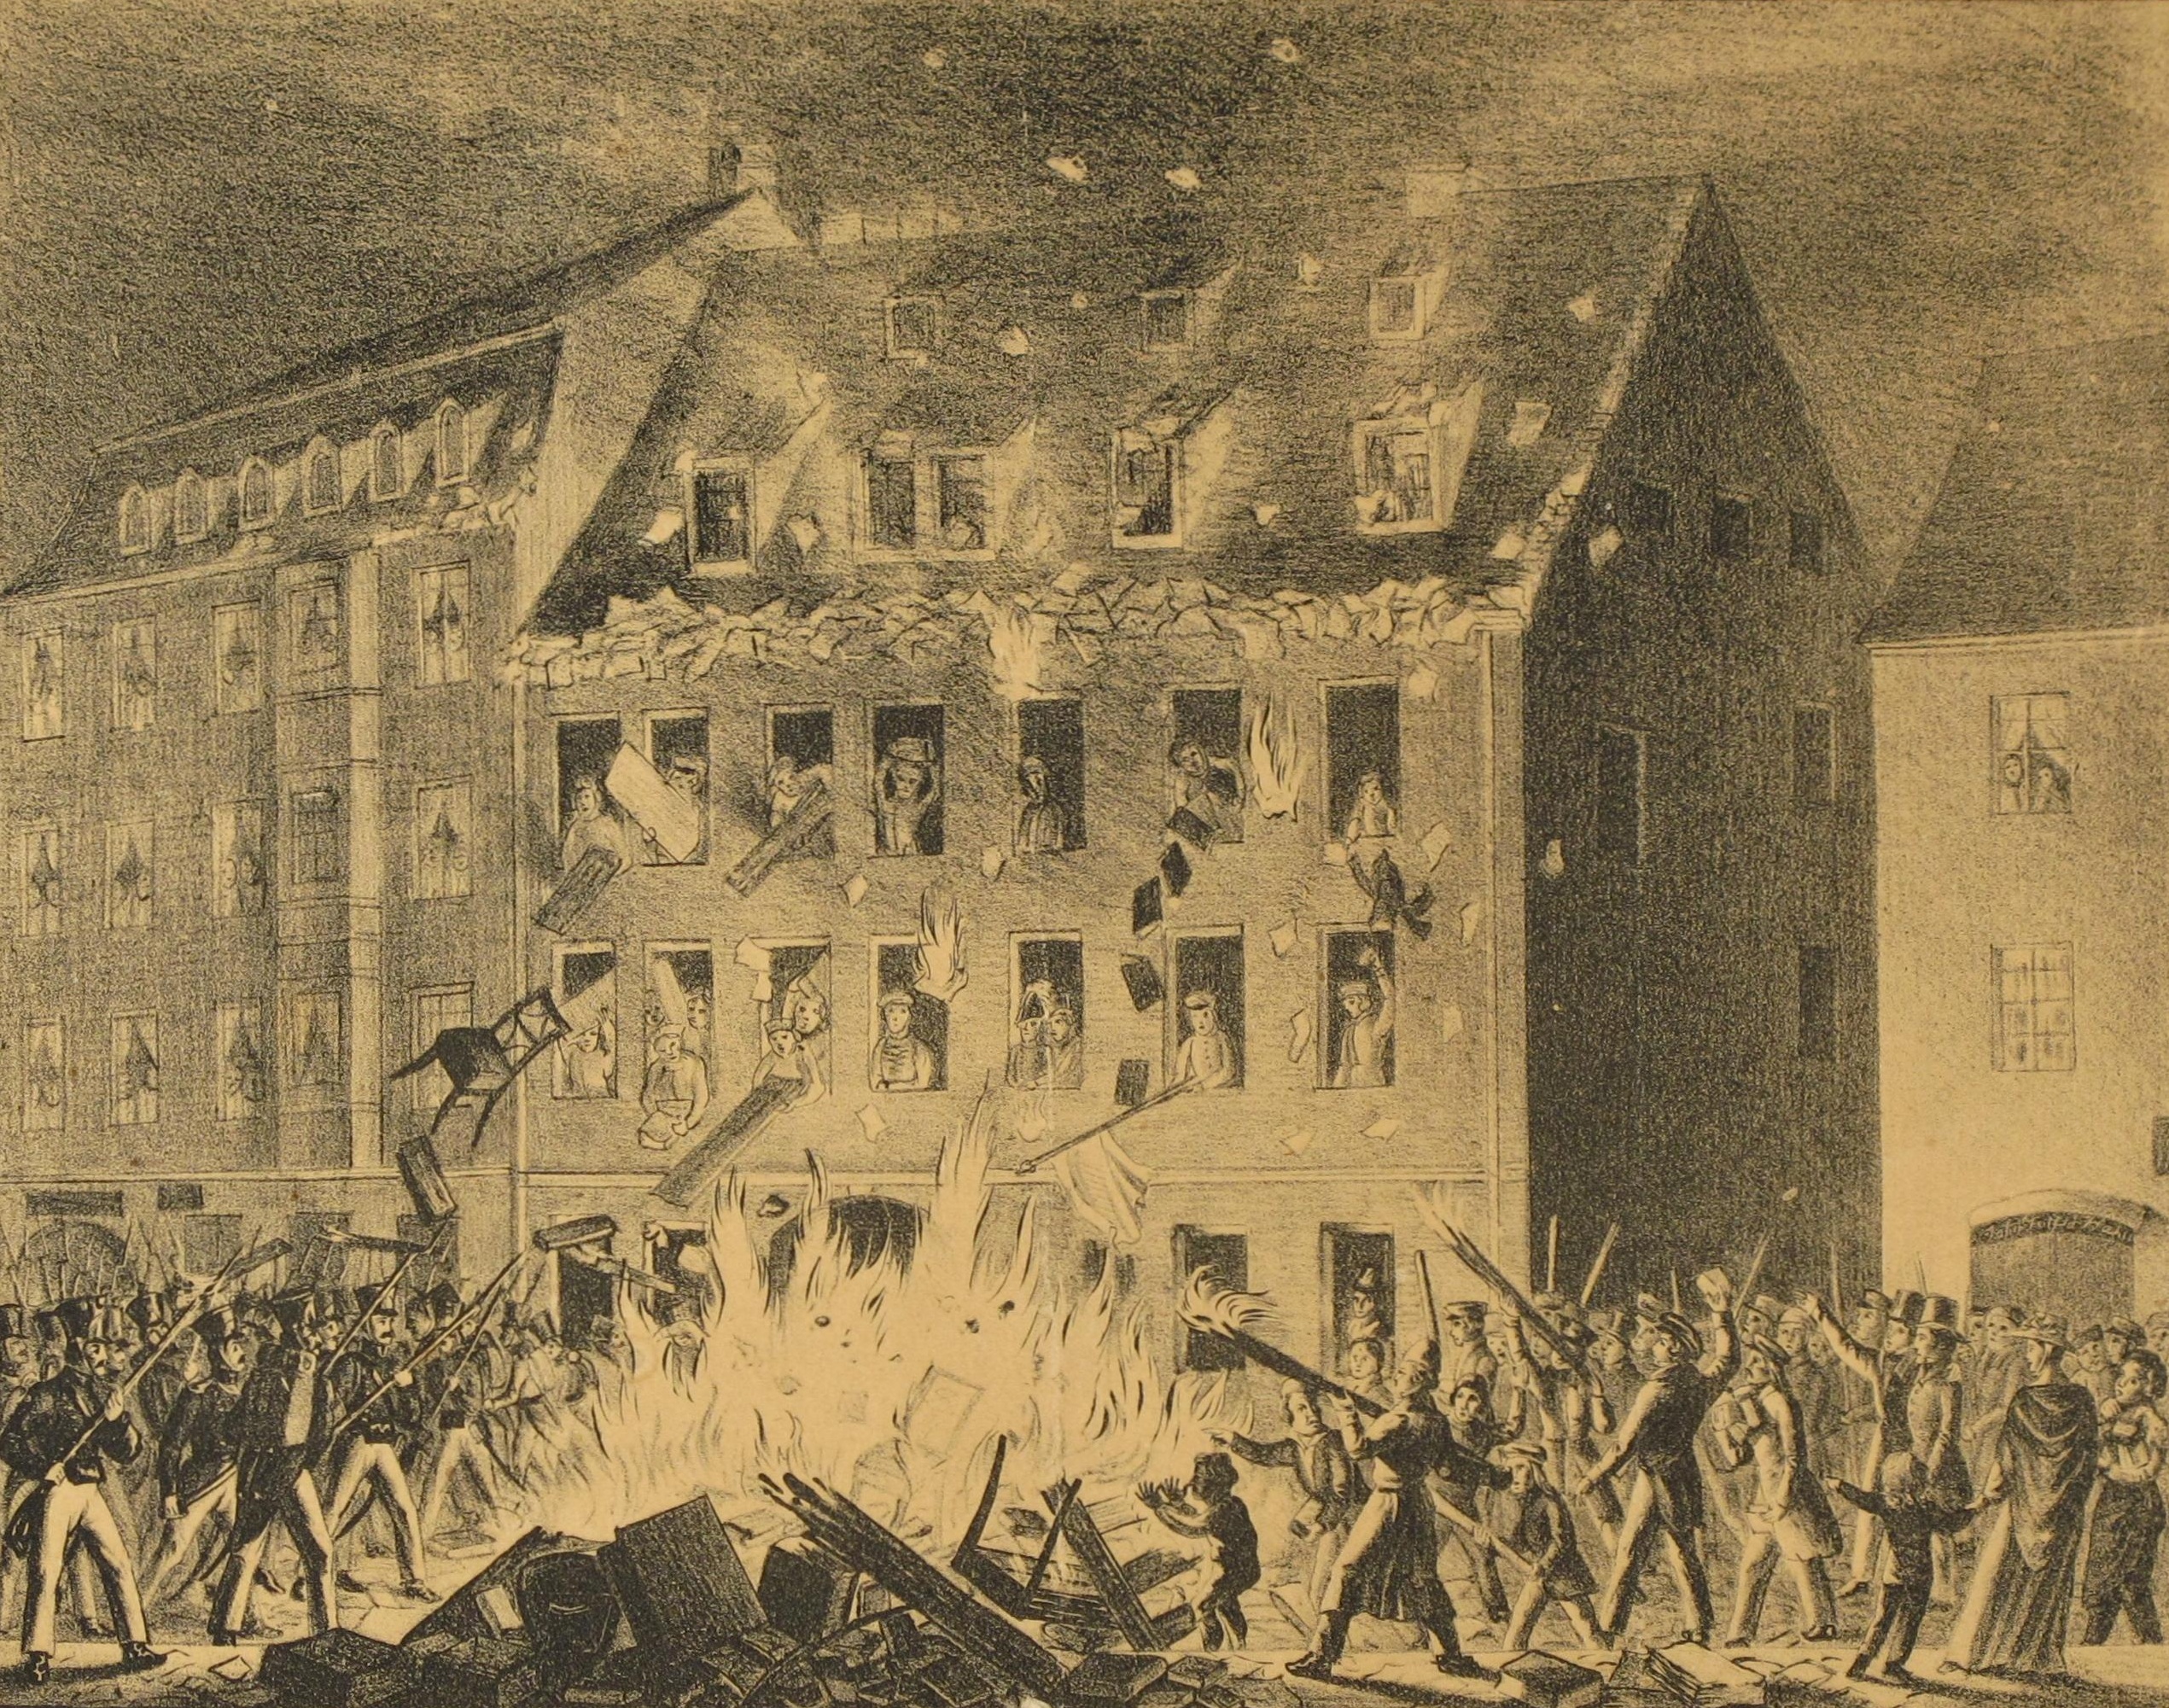 Grafik: Polizeihaus in Flammen, 1830